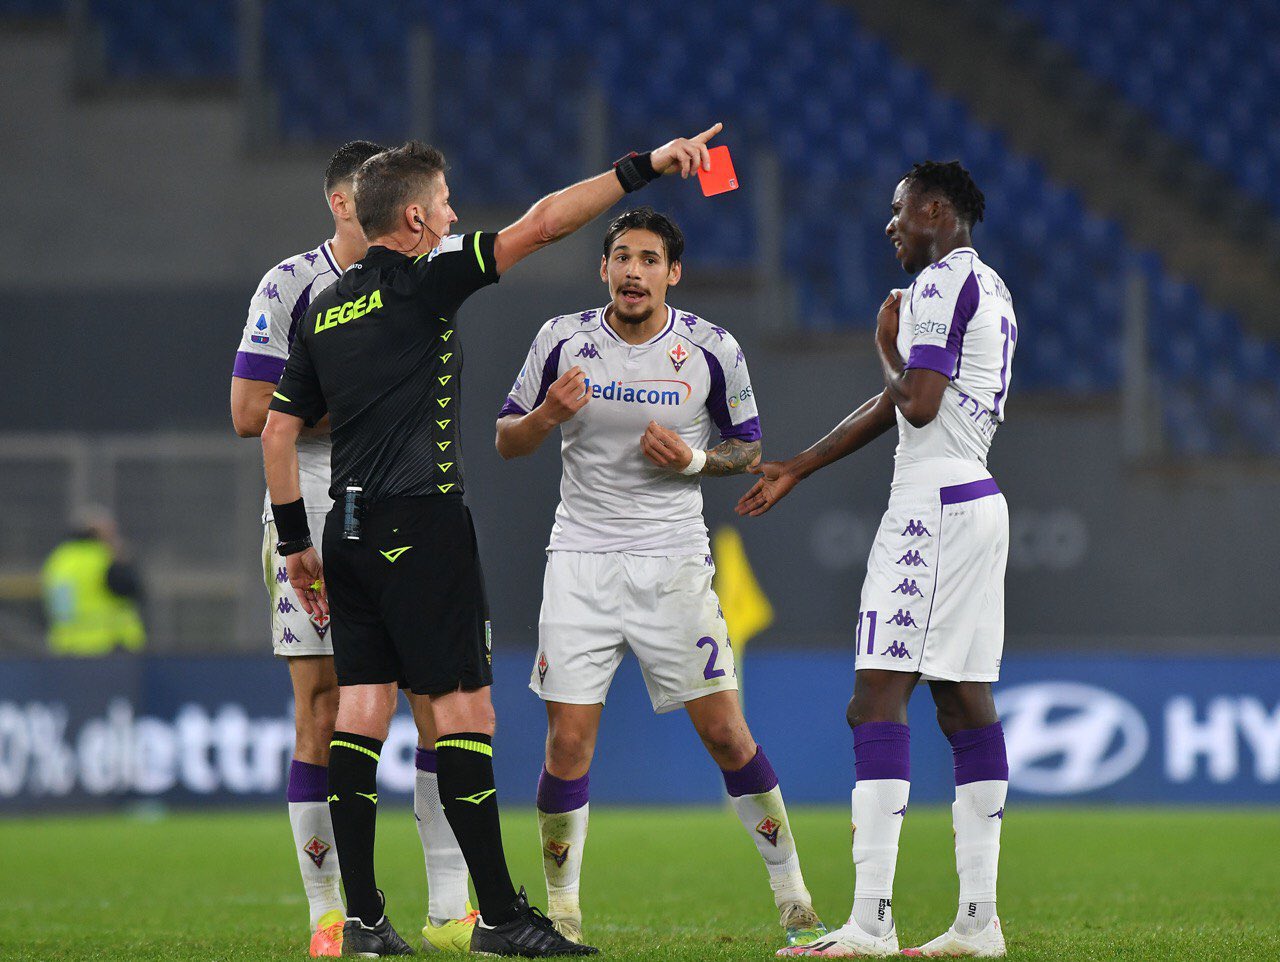 Roma-Fiorentina: Iachini un flop, per lui fiducia a tempo